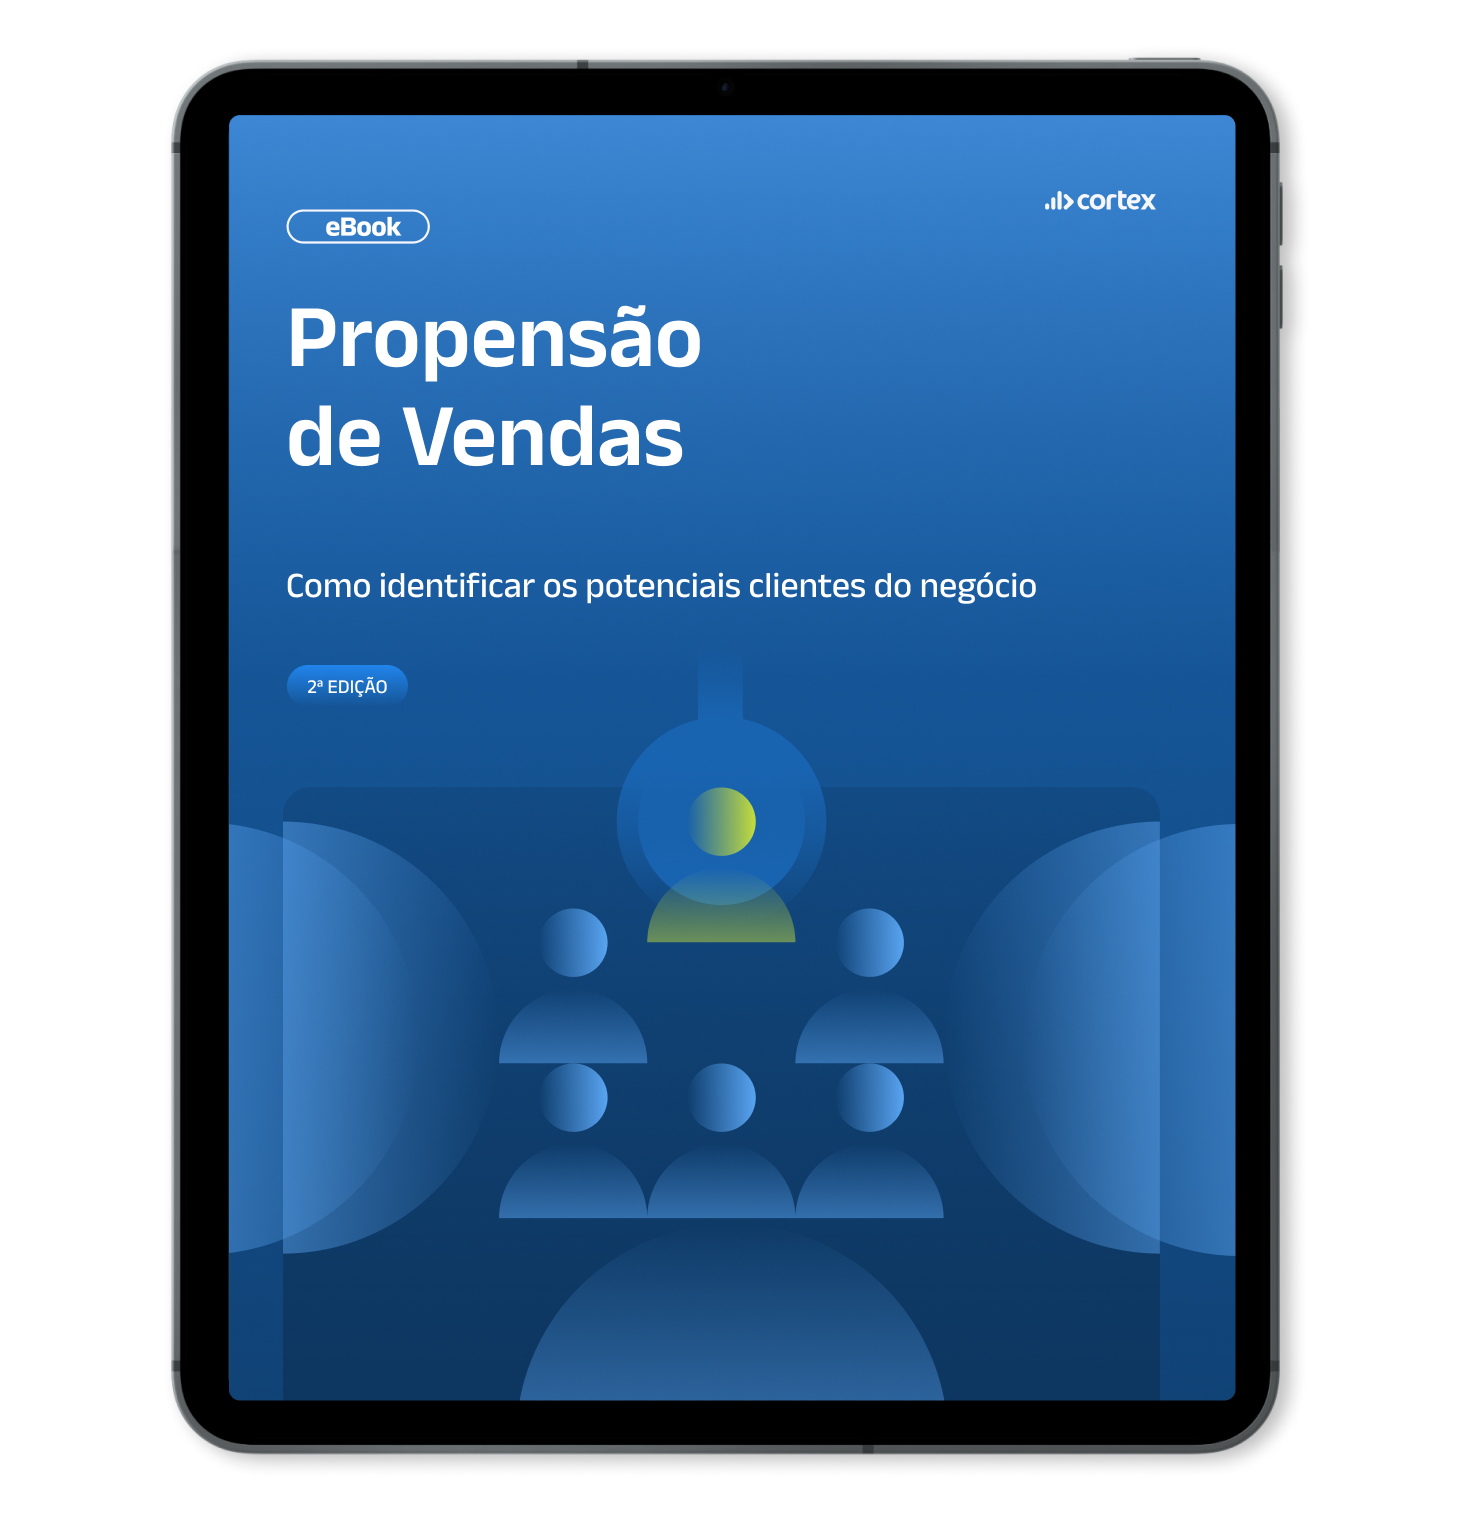 Mockup de Tablet com capa do eBook Propensão de Vendas_  como identificar os potenciais clientes do negócio - 2a edição